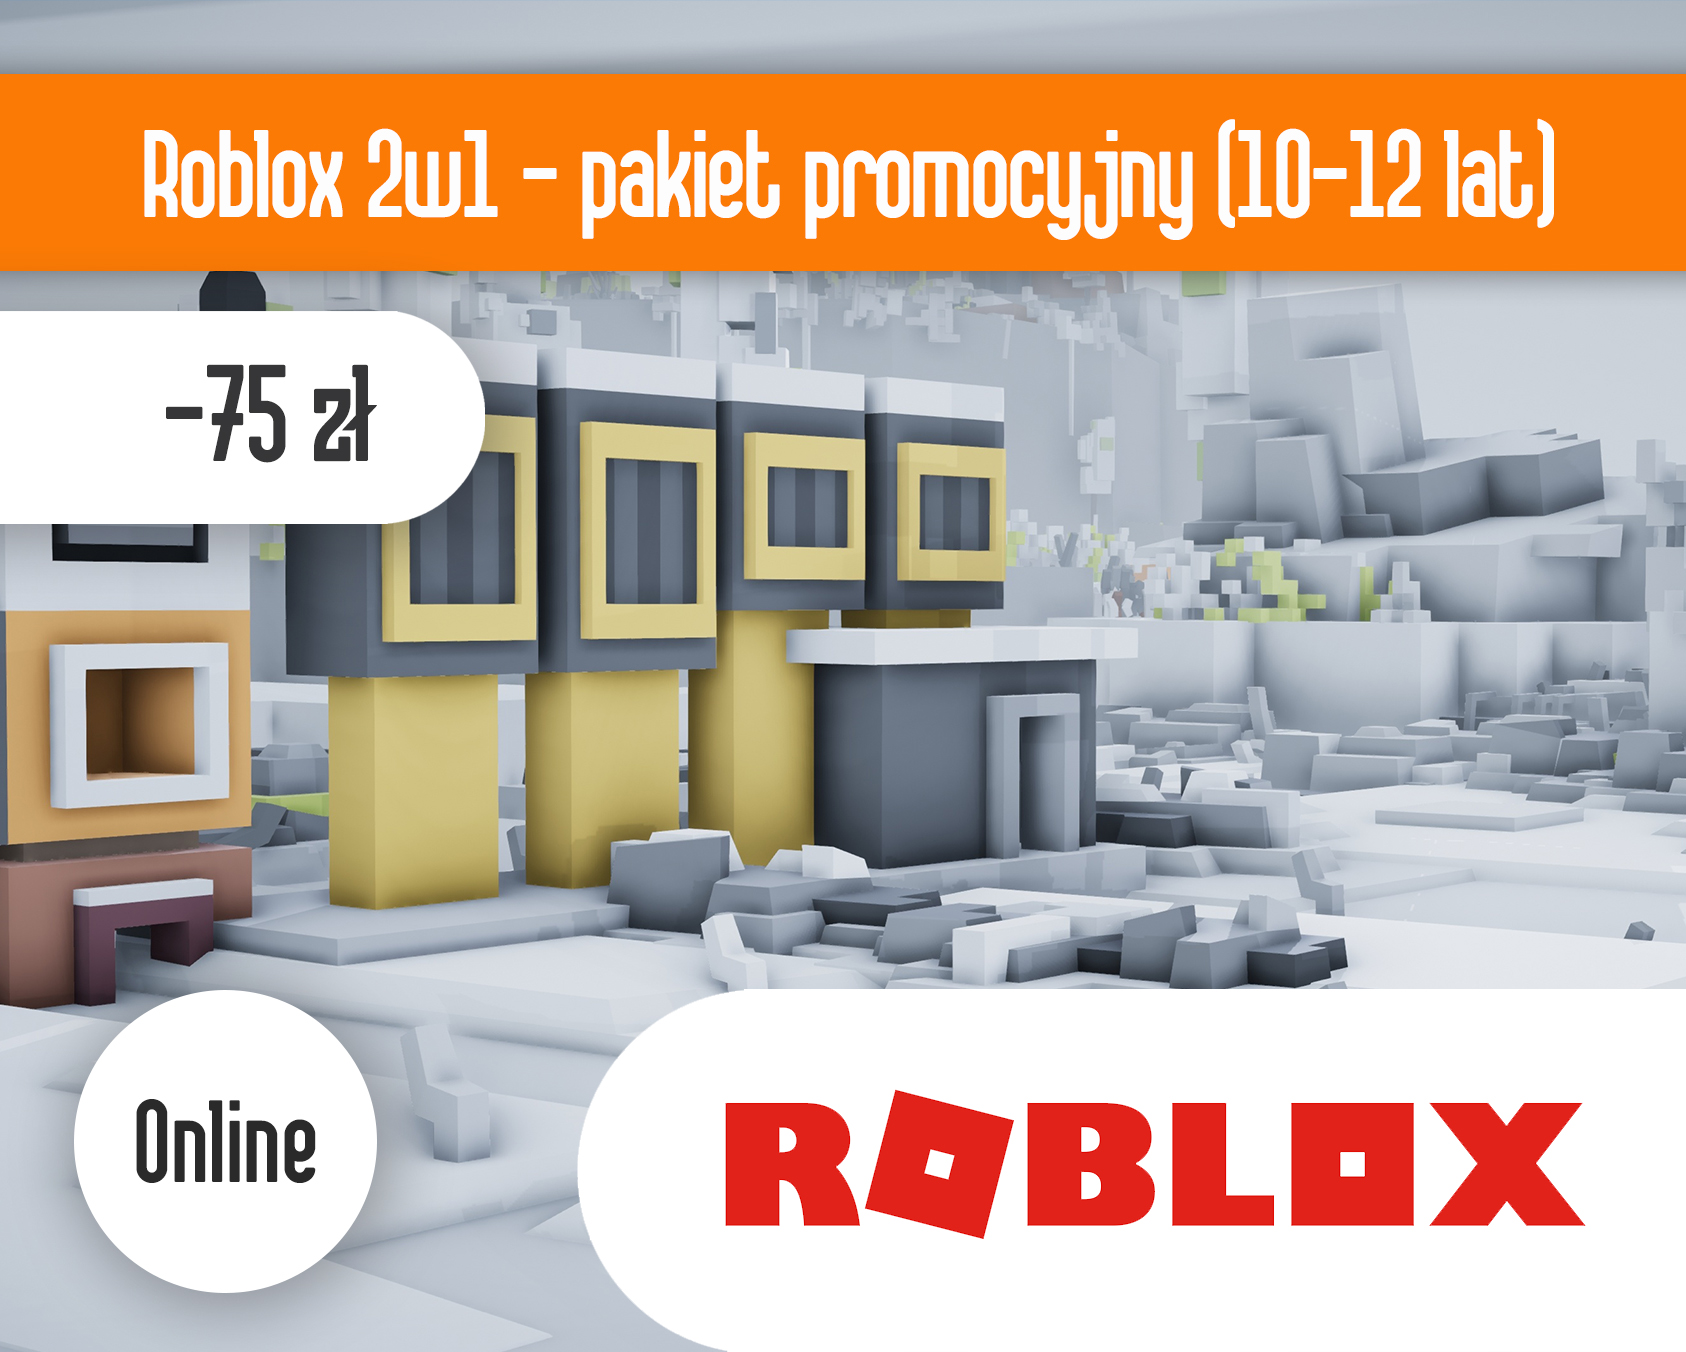 Roblox 2w1 ONLINE - pakiet promocyjny